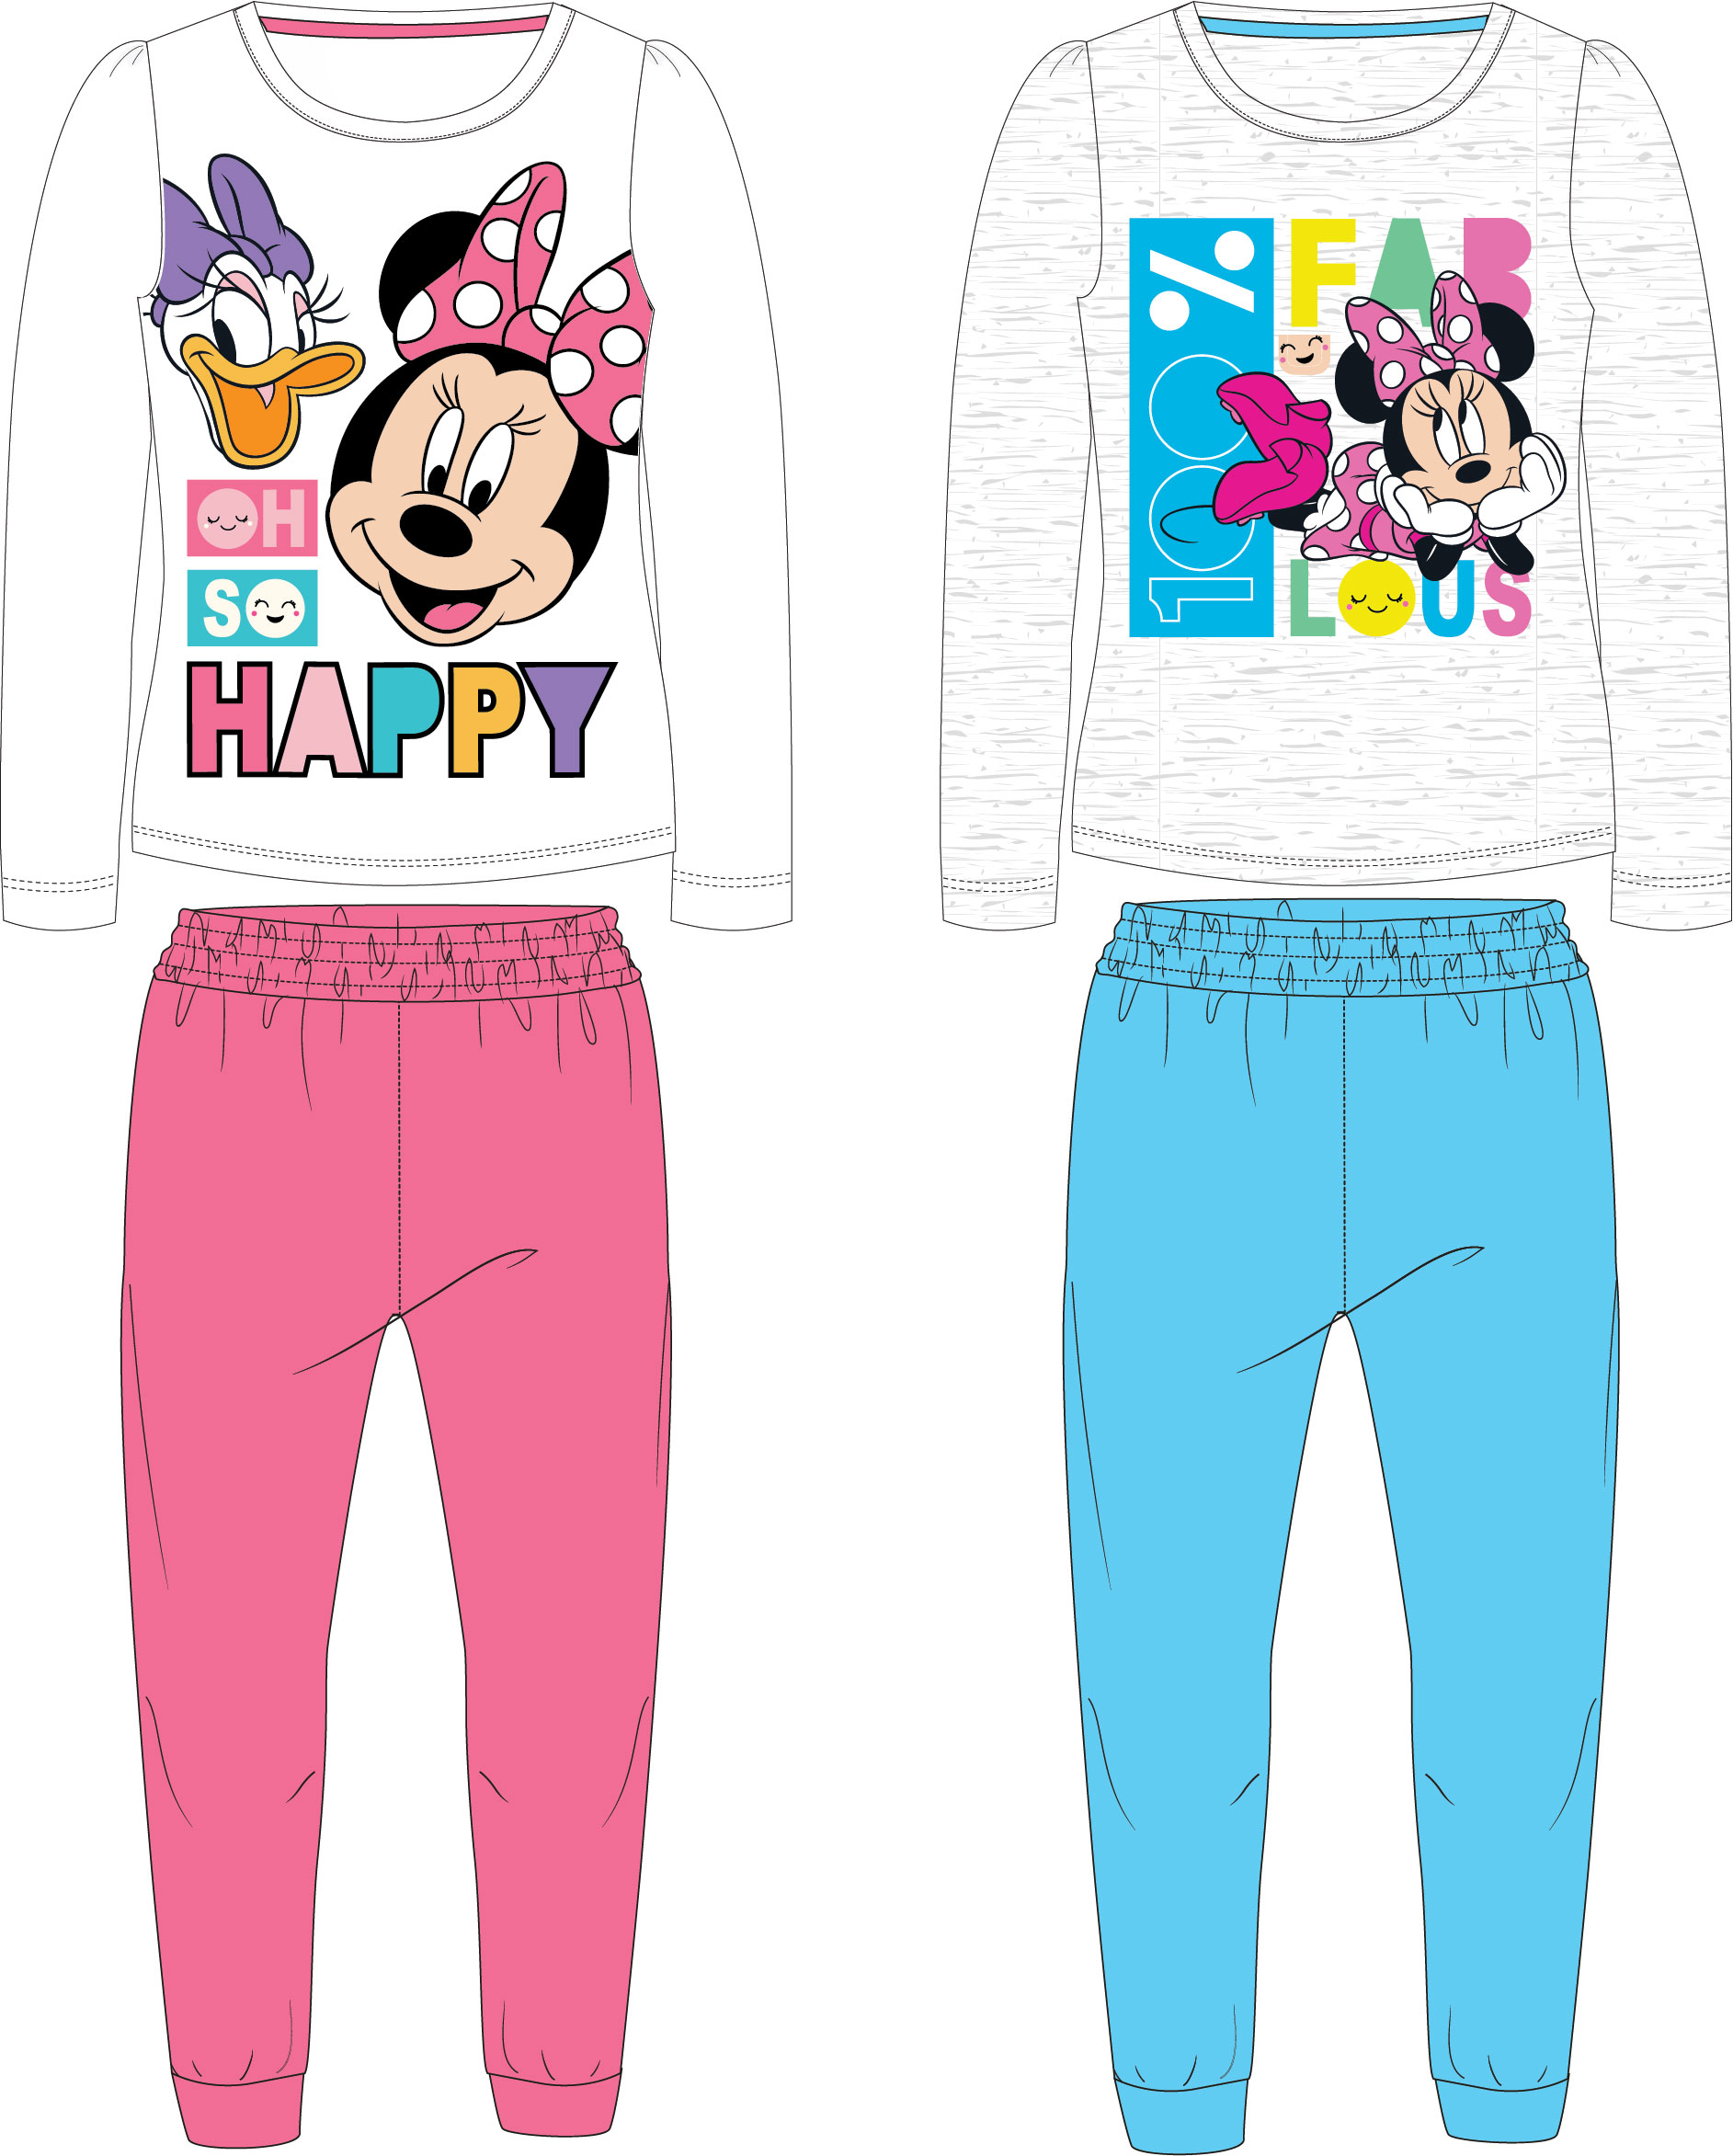 Minnie Mouse - licence Dívčí pyžamo - Minnie Mouse 52049146, šedá / světle modré kalhoty Barva: Šedá, Velikost: 116